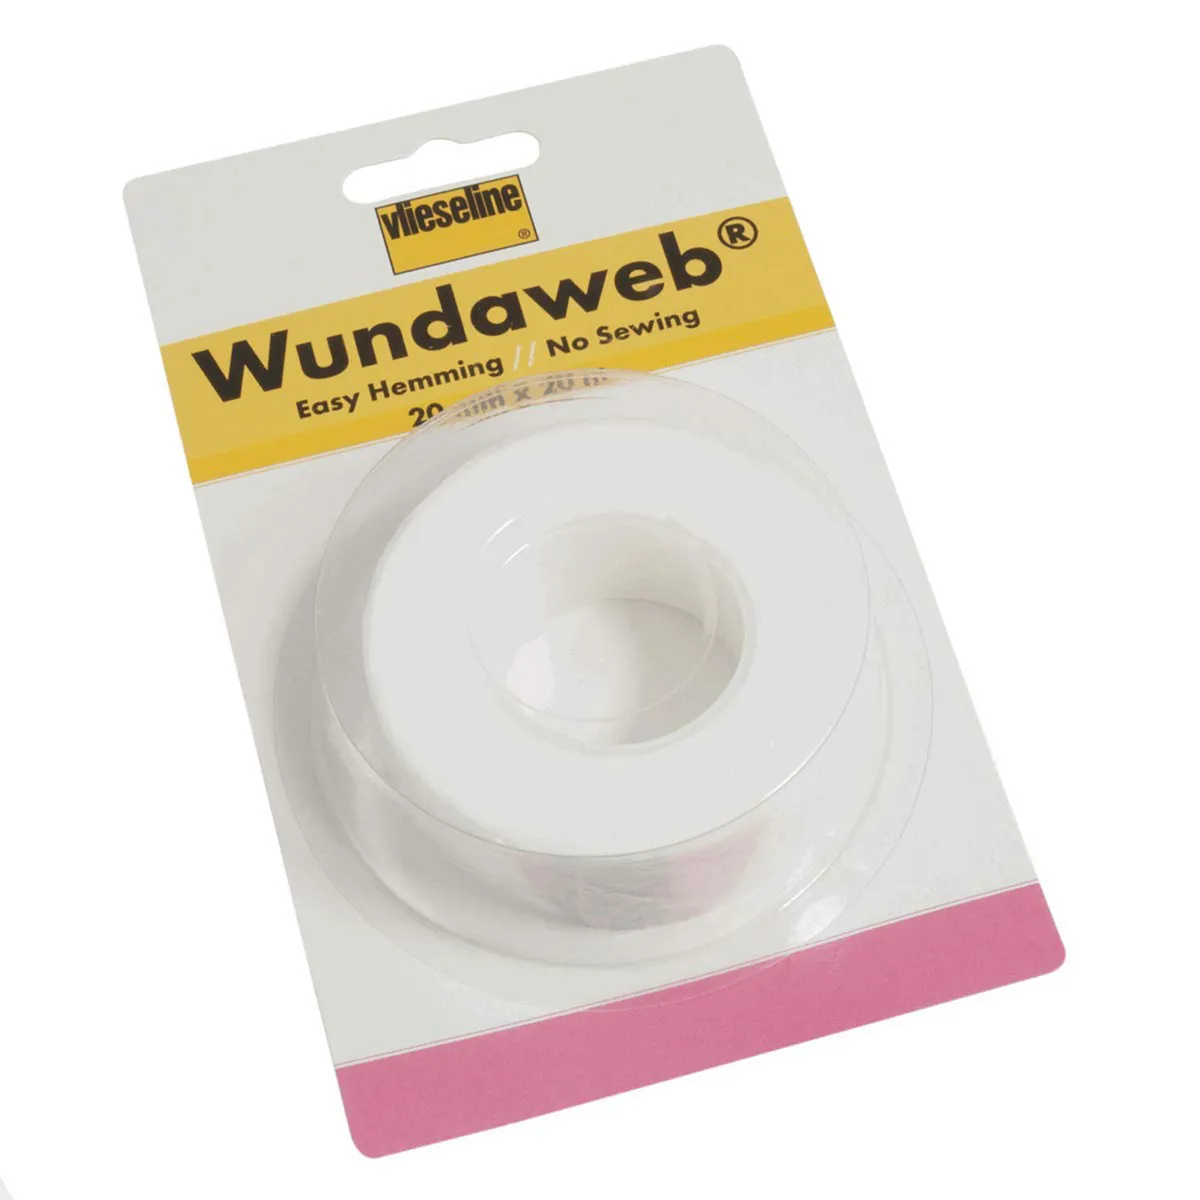 Vlieseline Wundaweb Wonderweb mending clothes